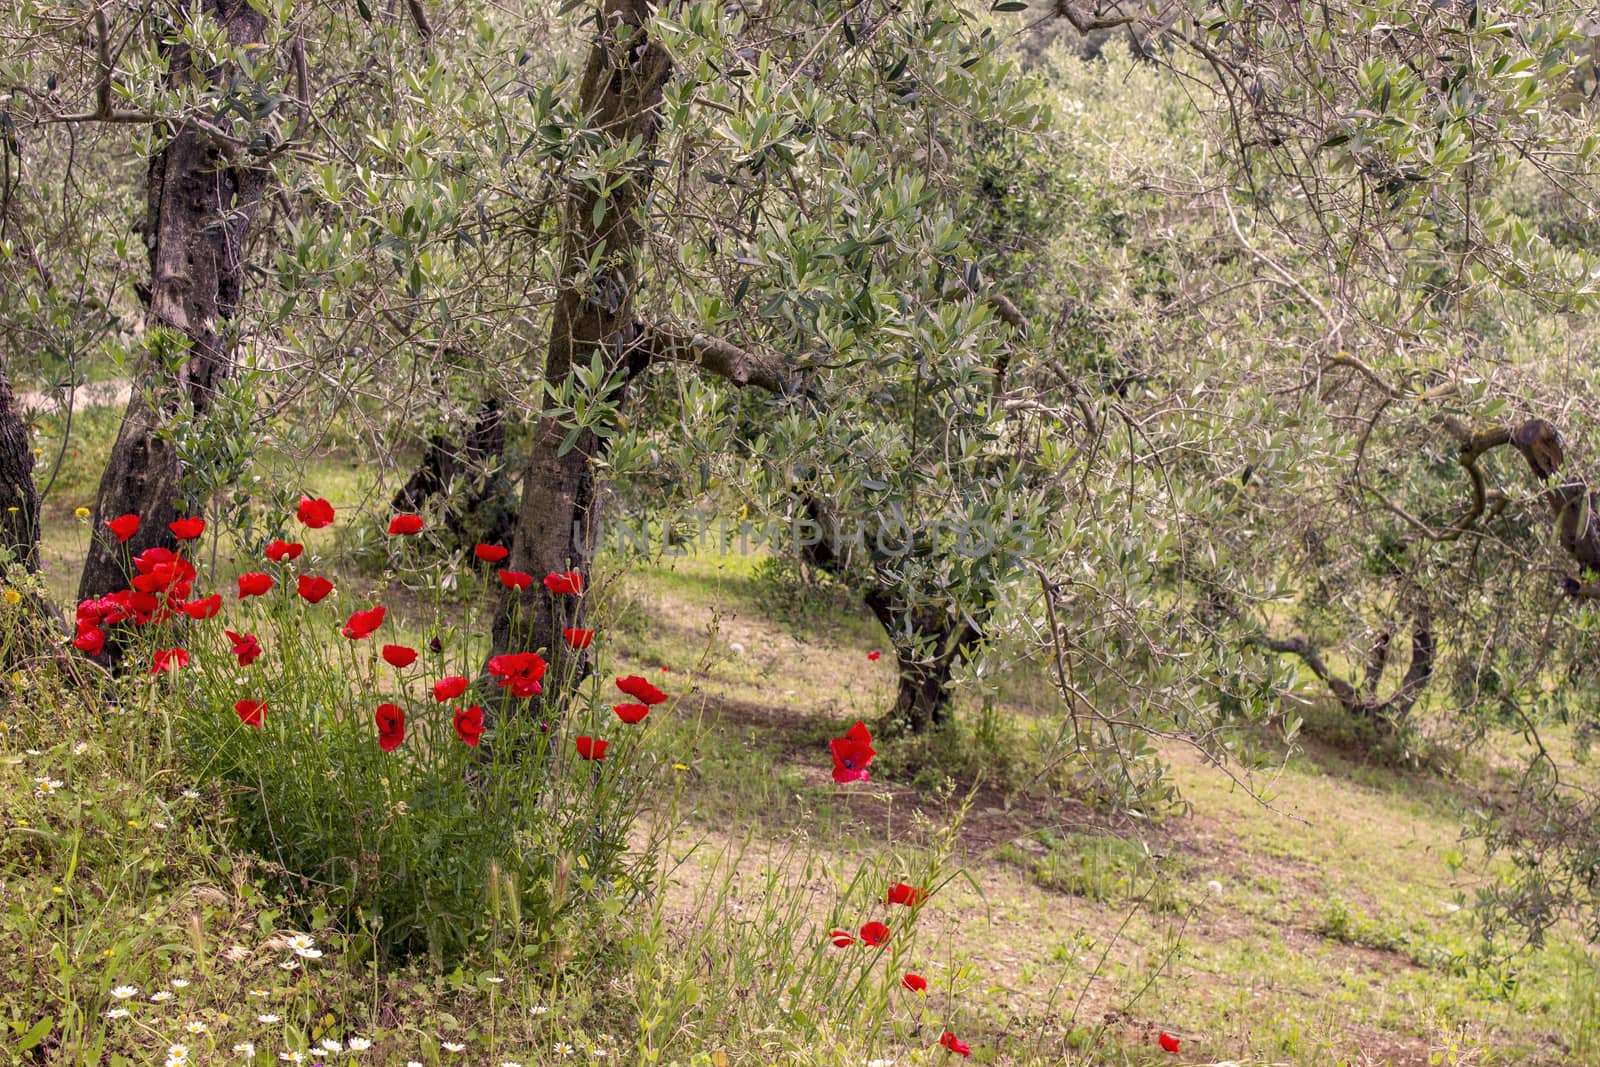 olive trees in Tuscany, Italy by miradrozdowski